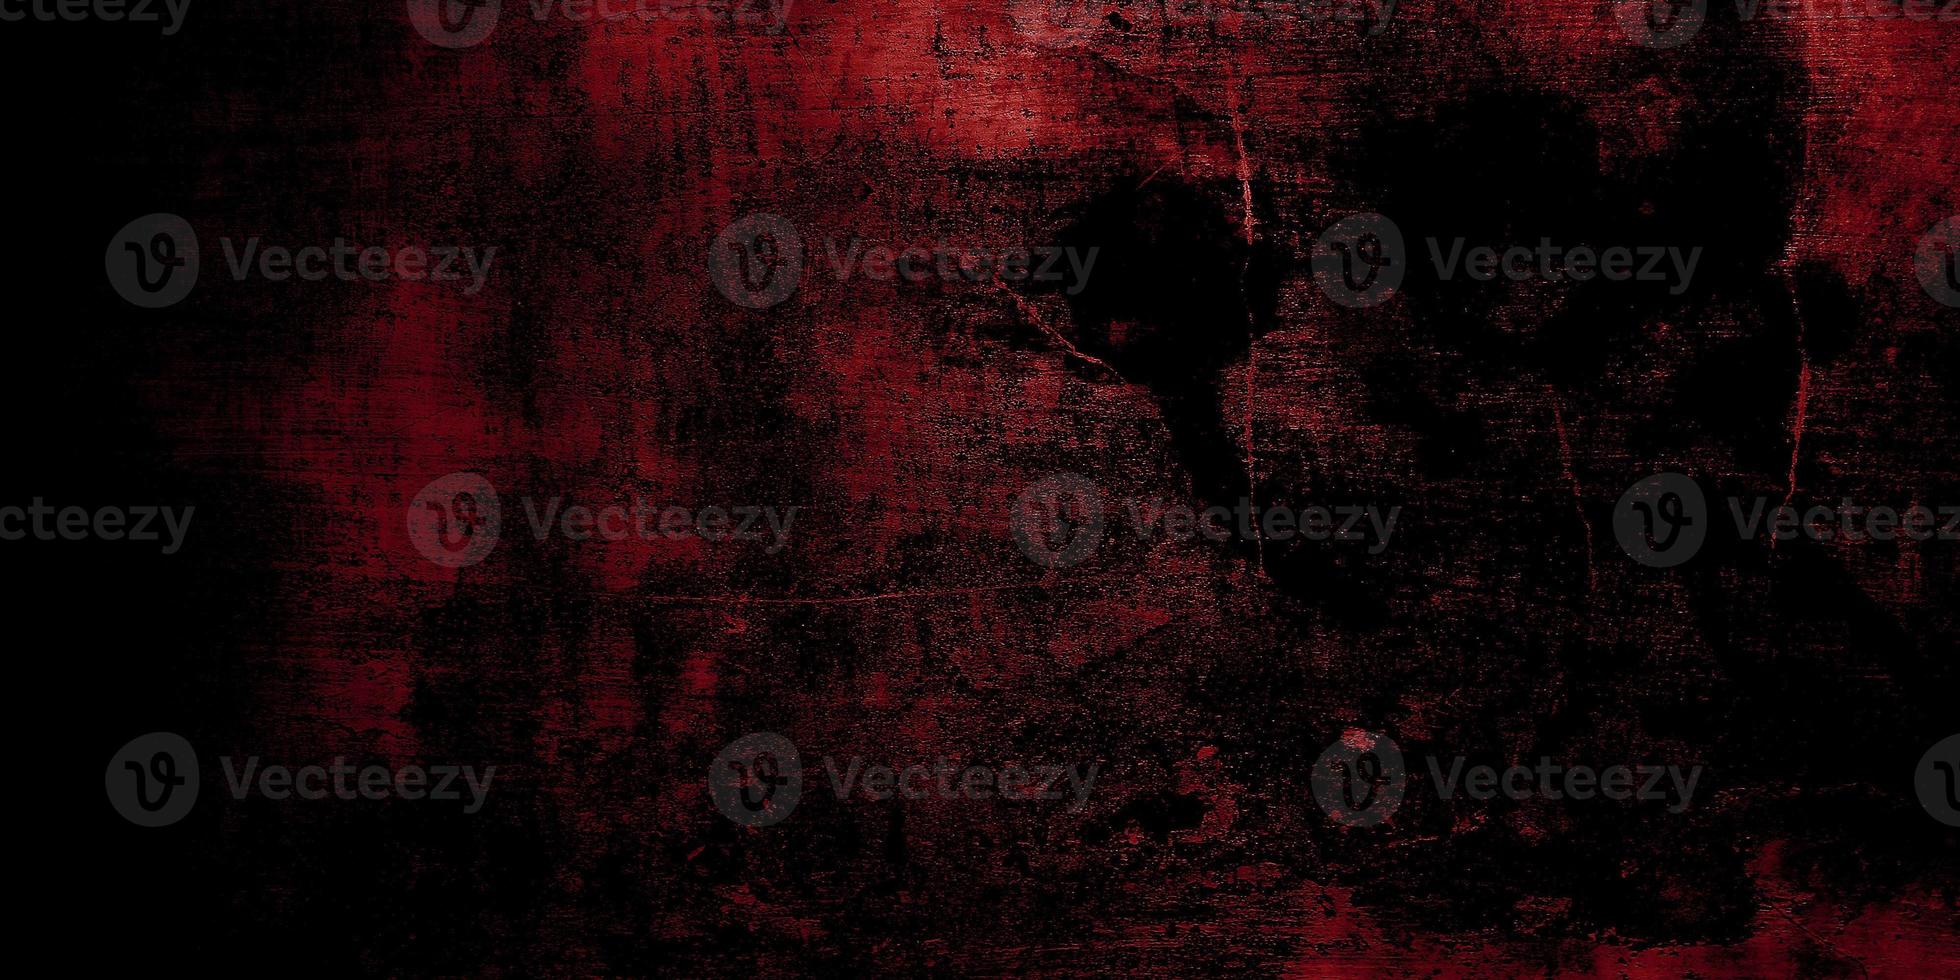 Fondo de terror rojo y negro. concreto oscuro grunge textura roja foto